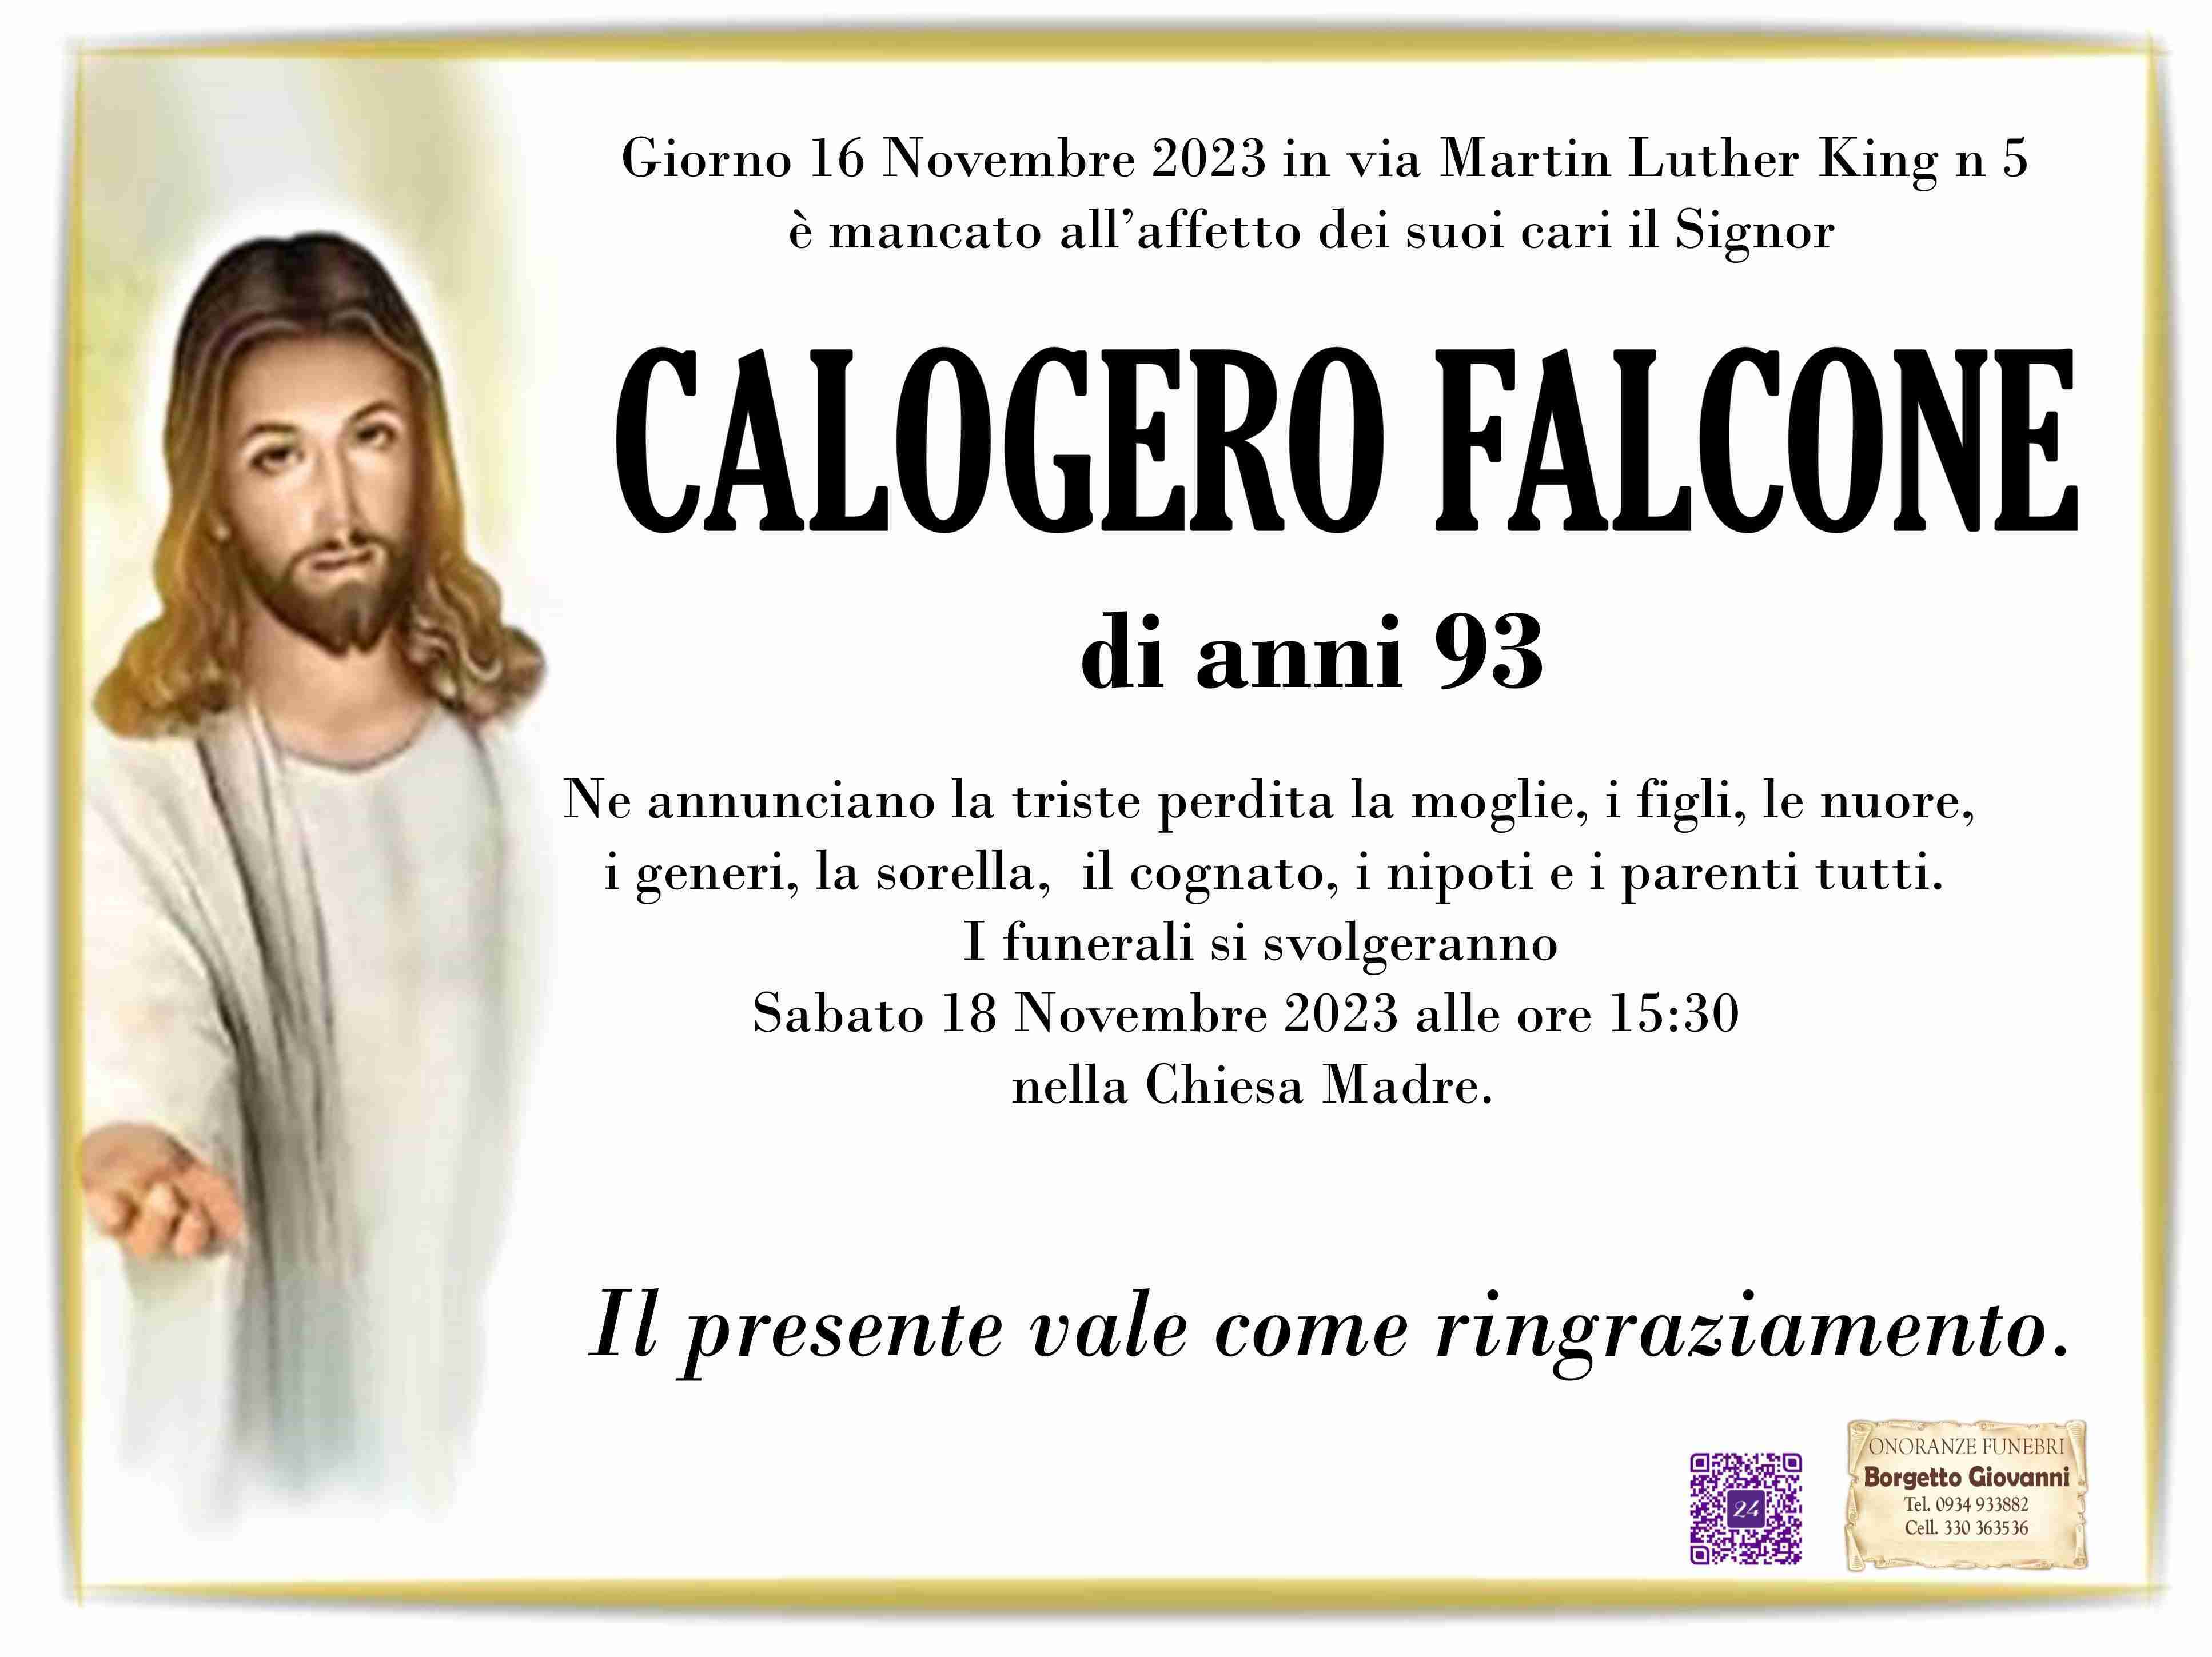 Calogero Falcone